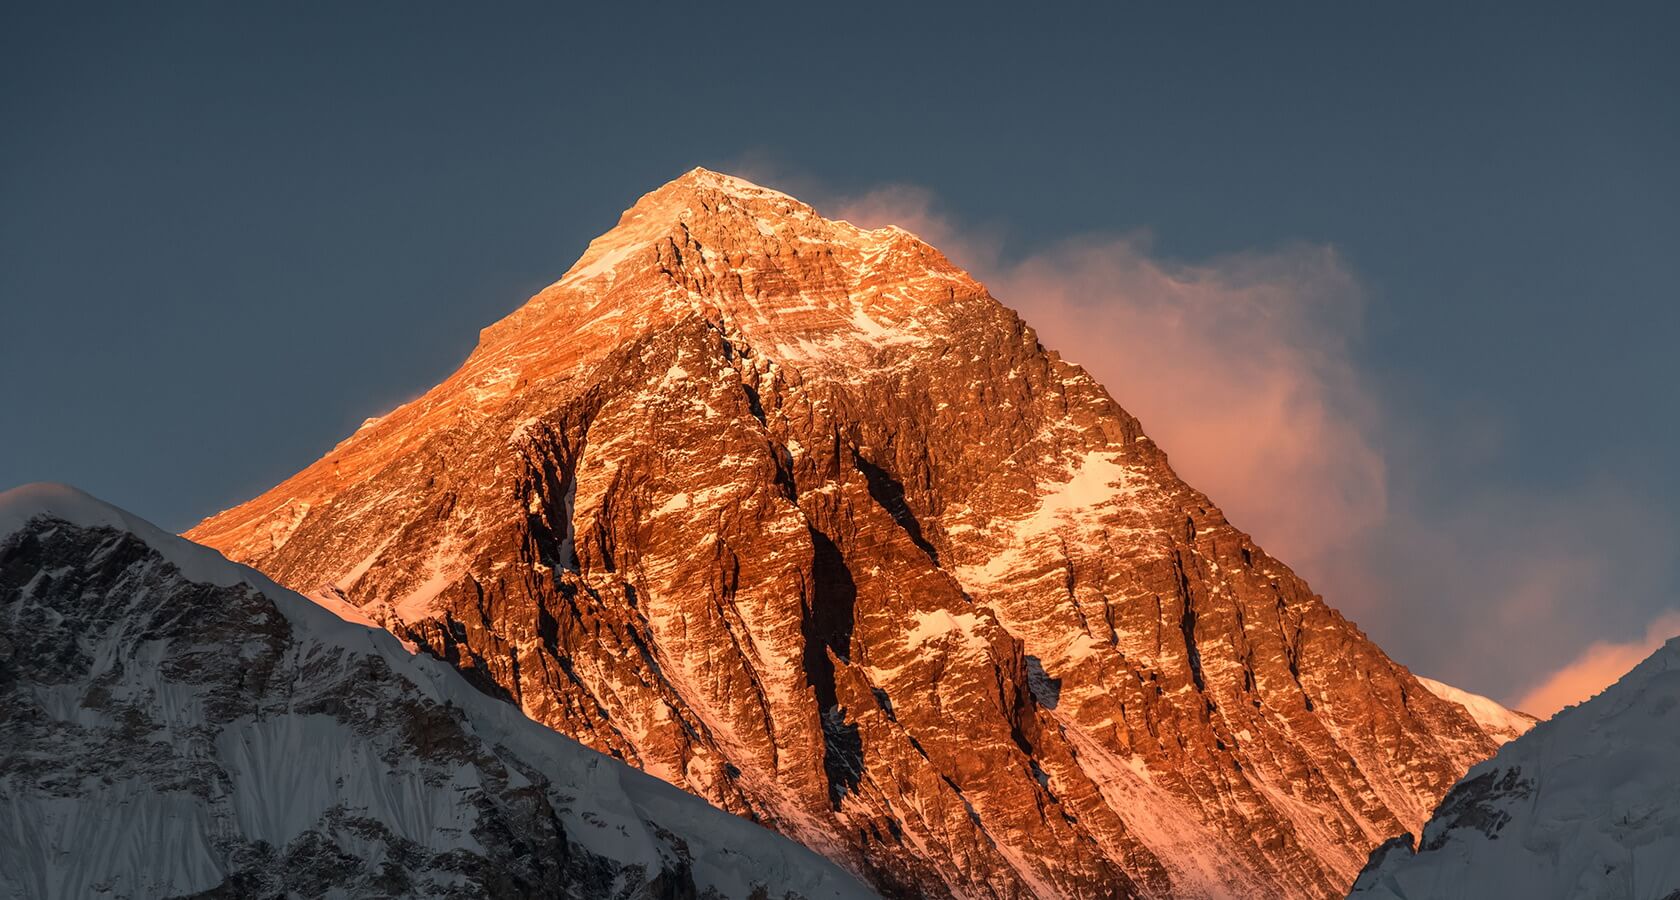 Более высокая гора. Гималаи Эверест Джомолунгма. Гора Эверест (Джомолунгма). Гималаи. Джомолунгма (Гималаи) - 8848. Гималаи (Джомолунгма 8848 м.).